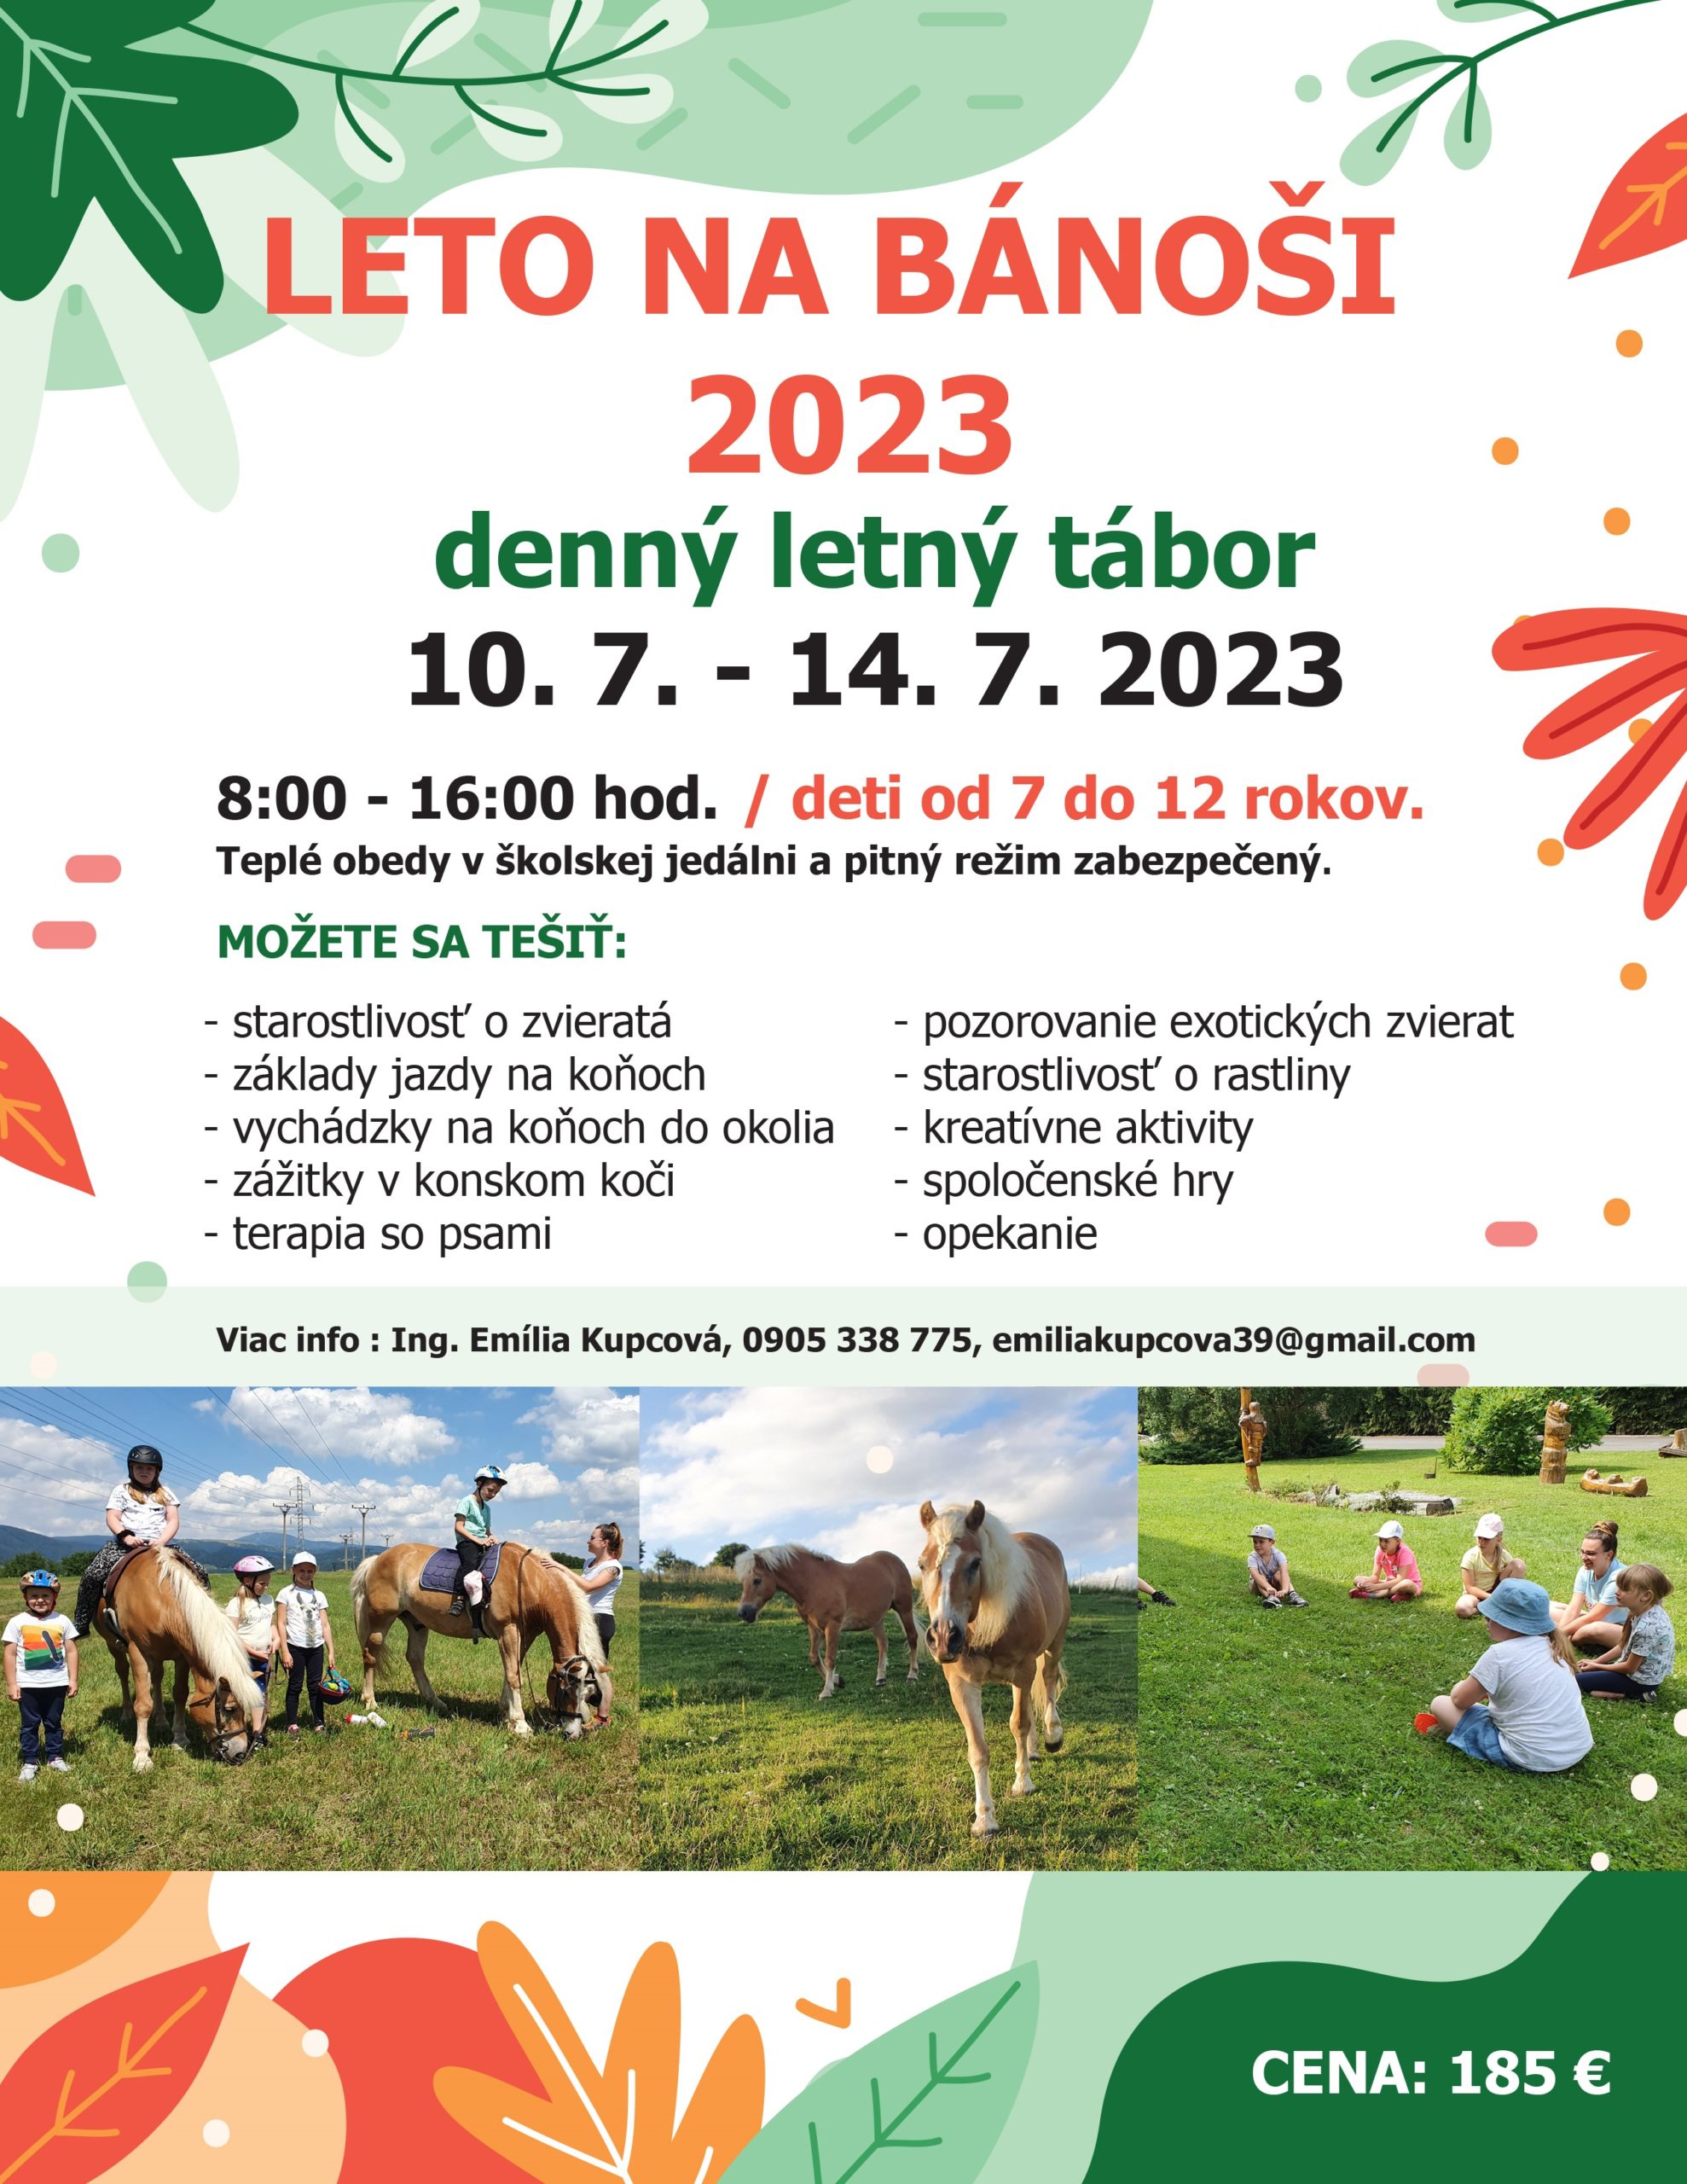 Featured image for “Denný letný tábor”